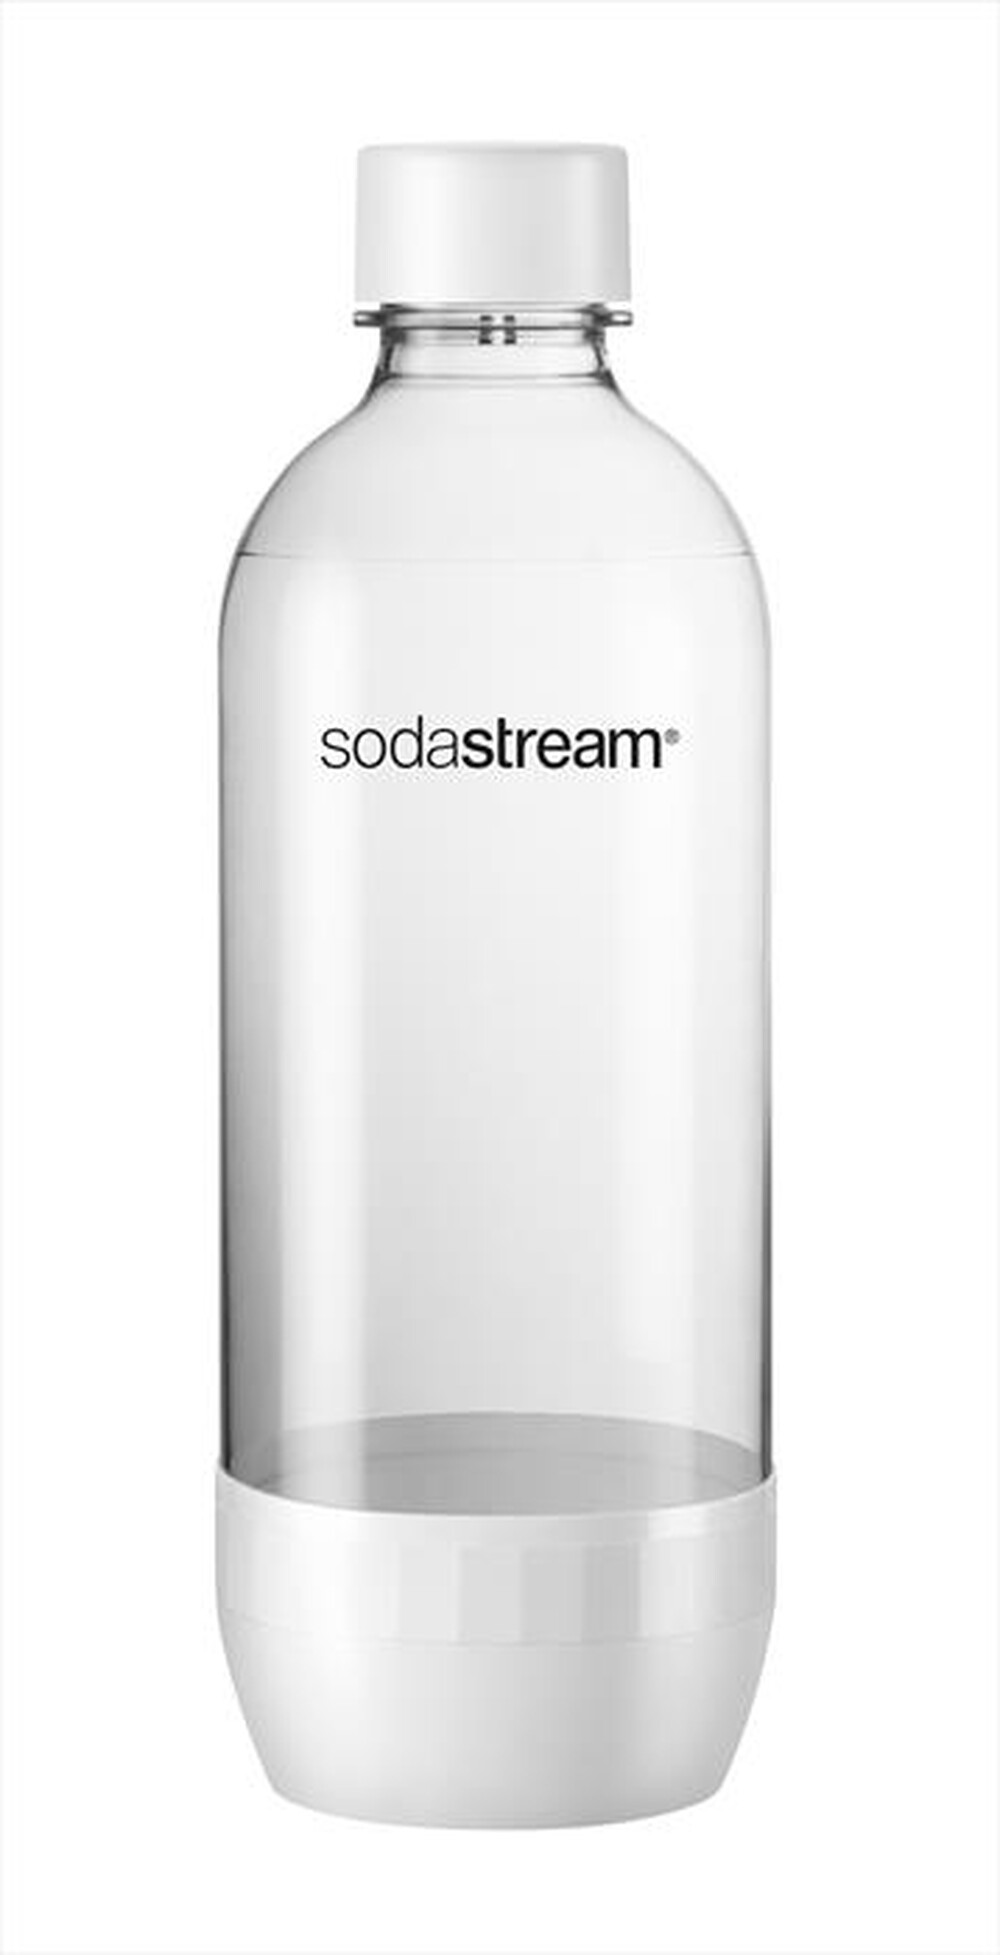 "SODASTREAM - Bottiglia in plastica (Tripack) - "